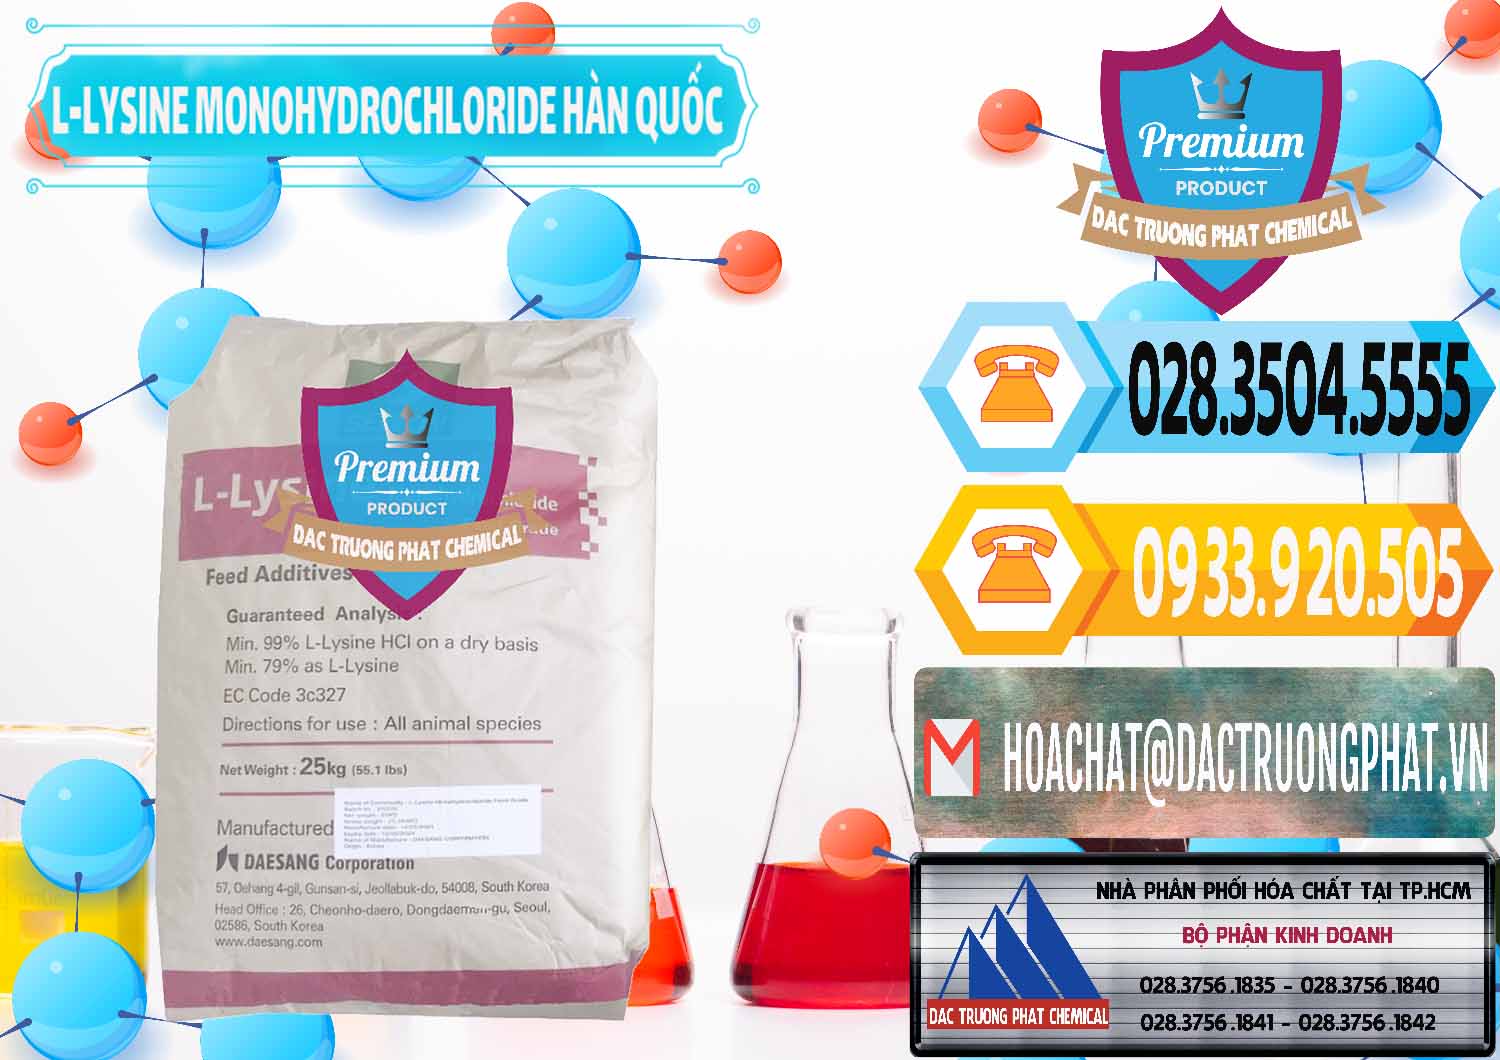 Cty bán _ cung ứng L-Lysine Monohydrochloride Feed Grade Sewon Hàn Quốc Korea - 0302 - Nhà cung cấp - nhập khẩu hóa chất tại TP.HCM - hoachattayrua.net